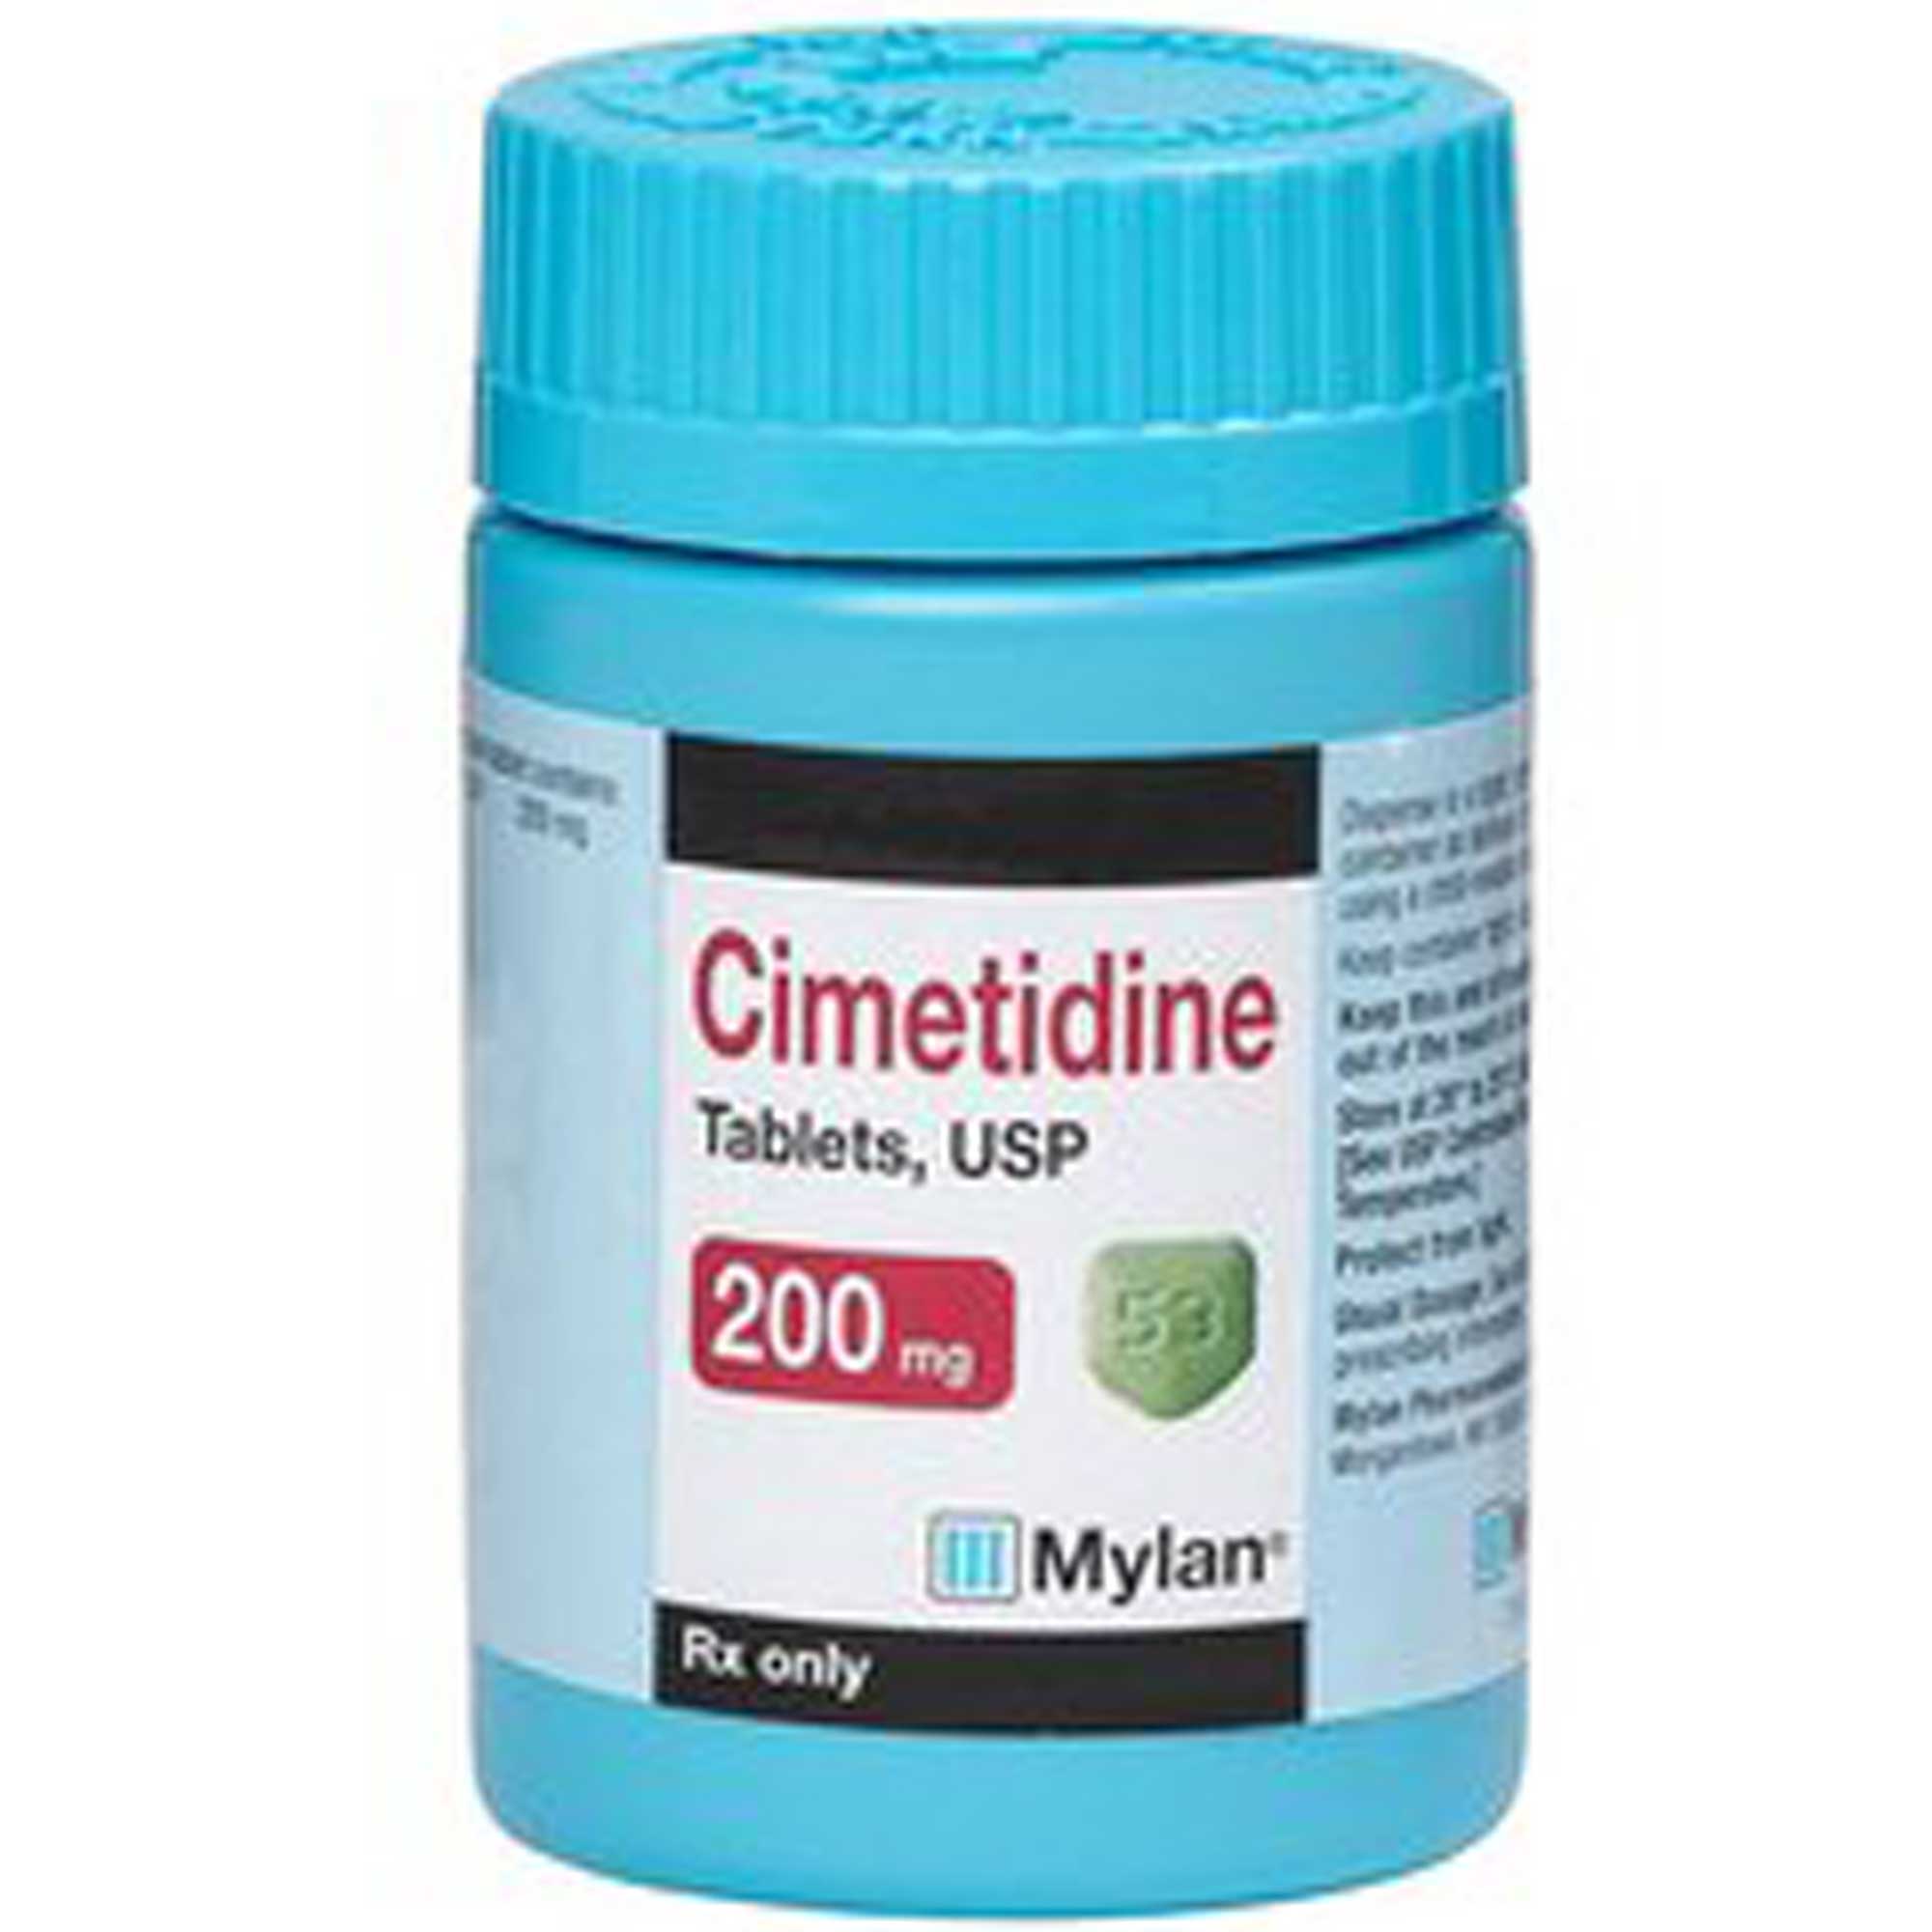 Cimetidine Usage